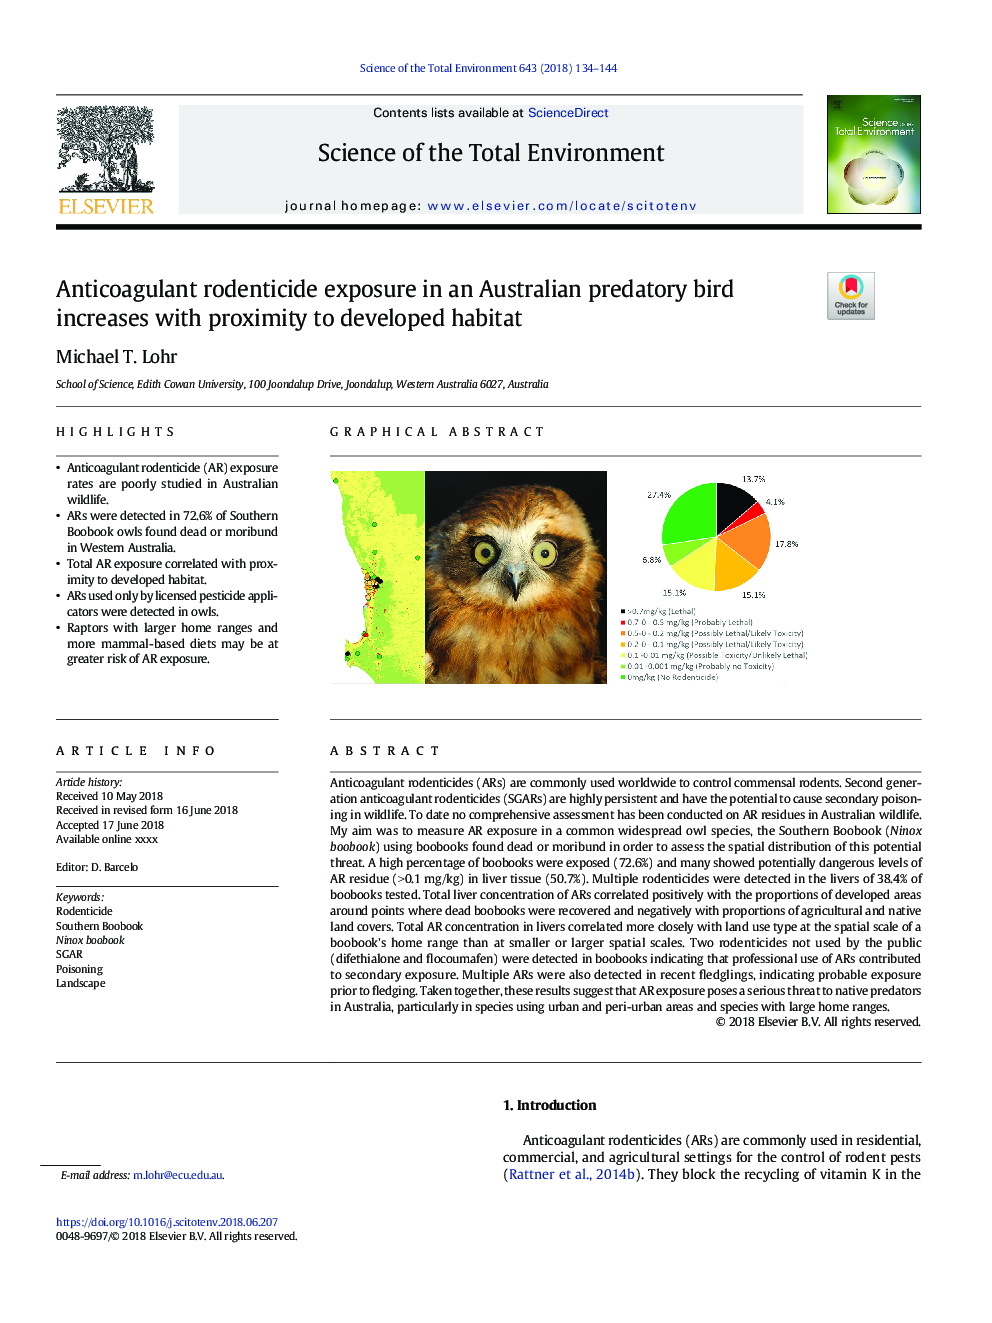 قرار گرفتن در معرض موش صحرایی ضد انعقادی در یک پرنده خرابکار استرالیا با نزدیکی به زیستگاه توسعه یافته 